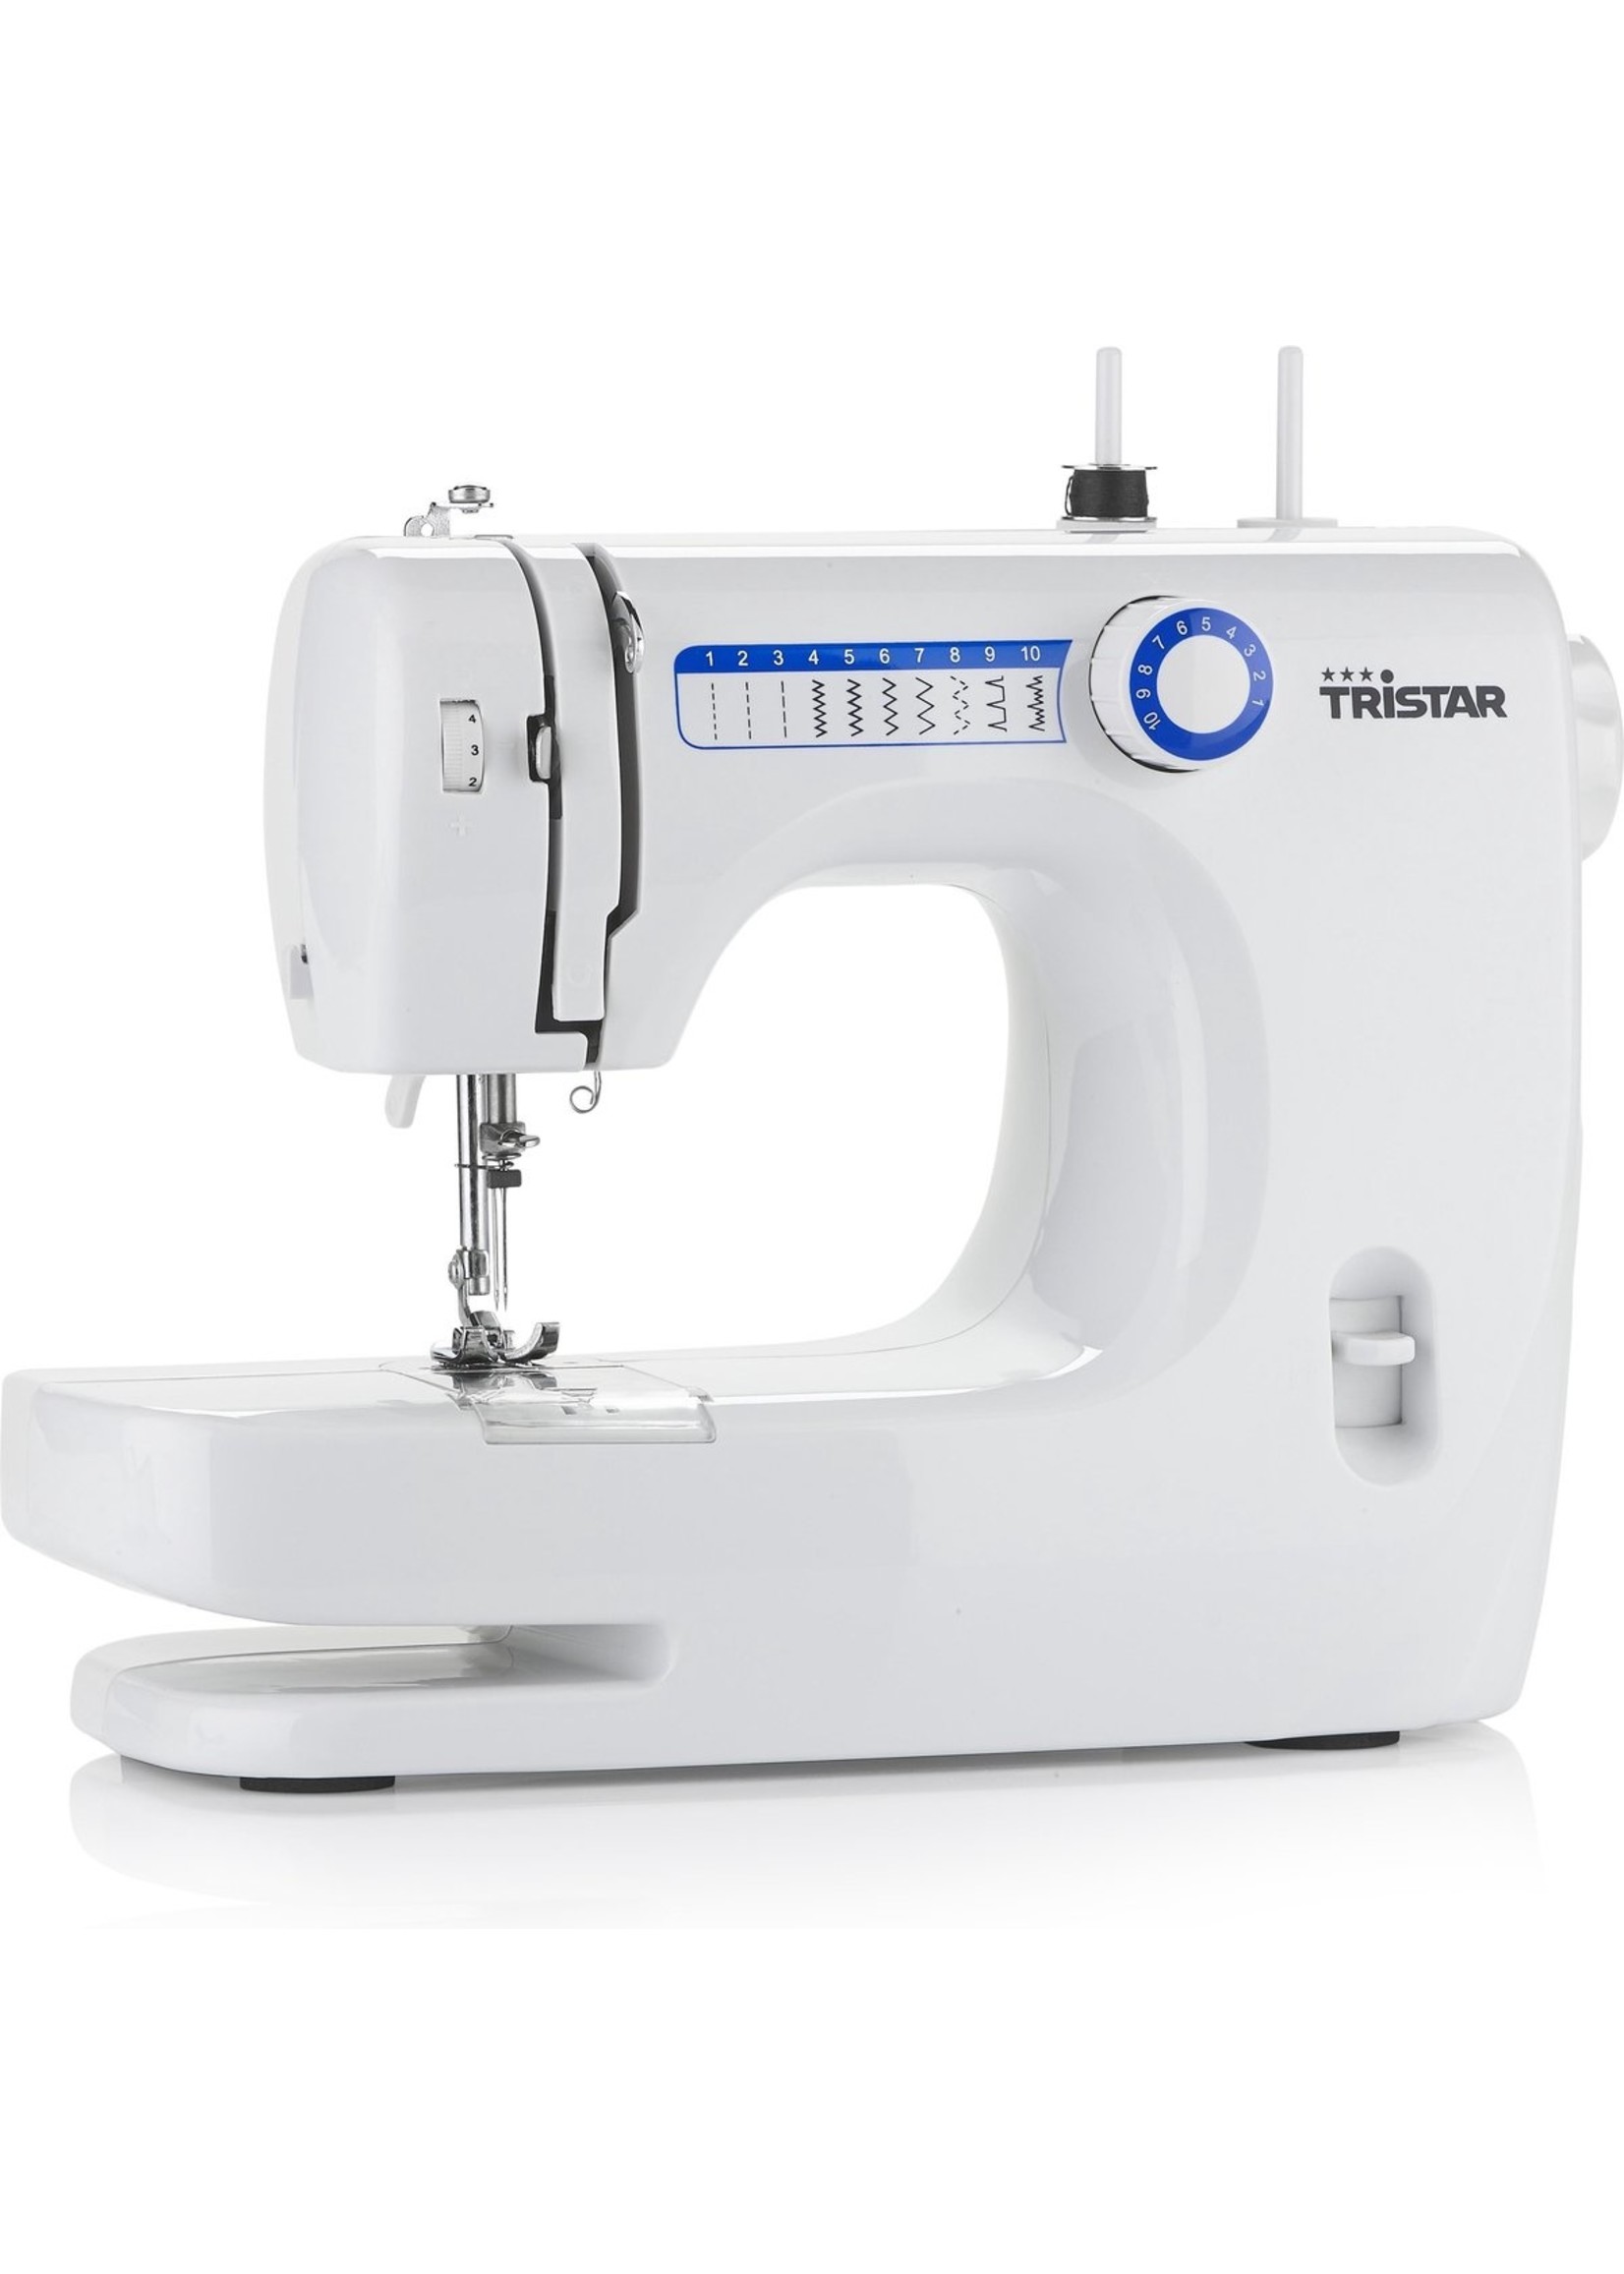 Tristar Tristar SM-6000 Sewing Machine - Naaimachine - 10 patronen - Wit koopjeshoek